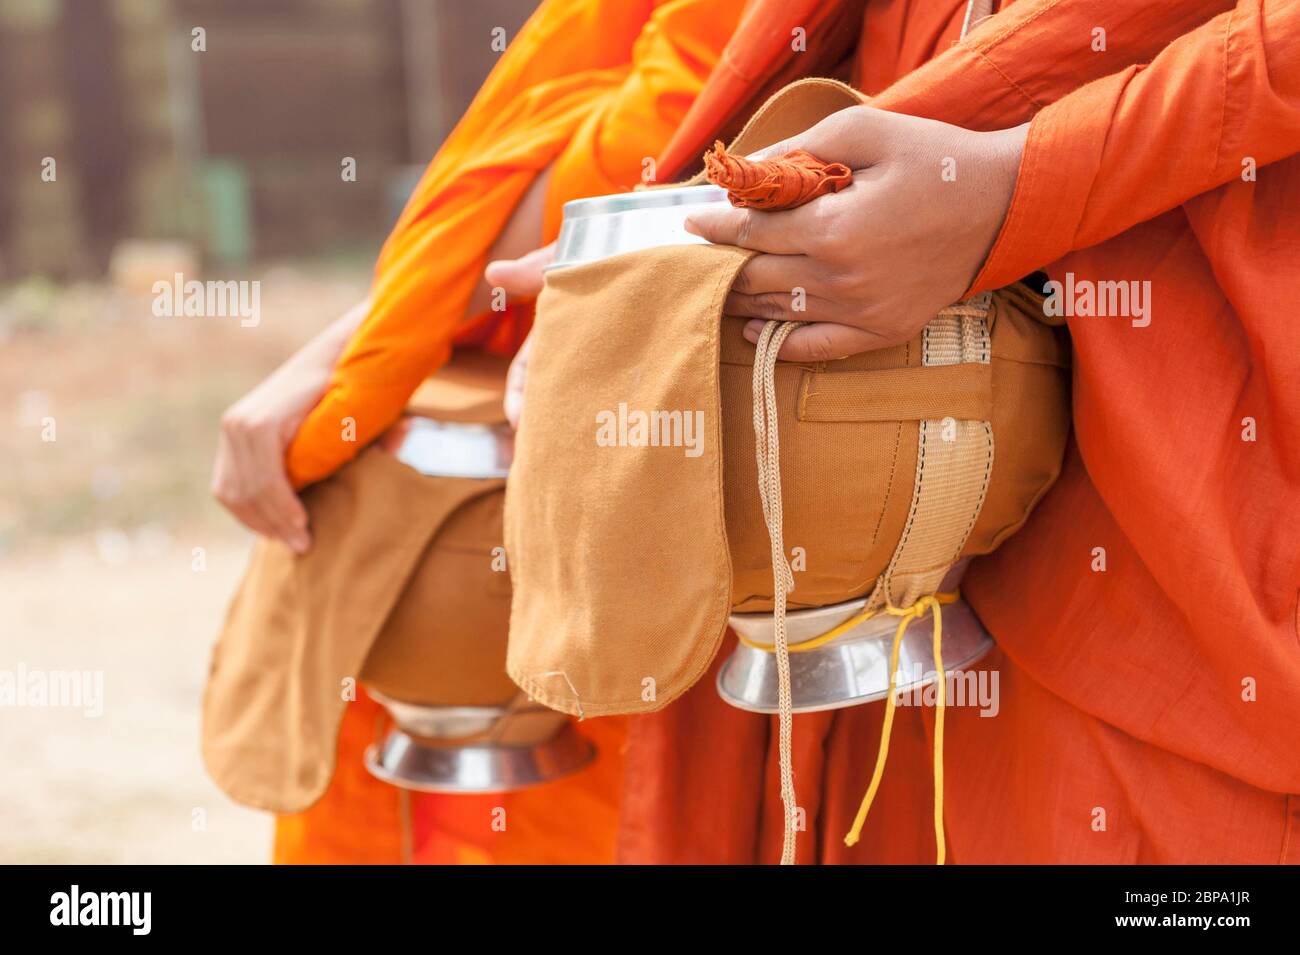 Bols almsdonning tenus par des moines buddist. Cambodge central, Asie du Sud-est Banque D'Images